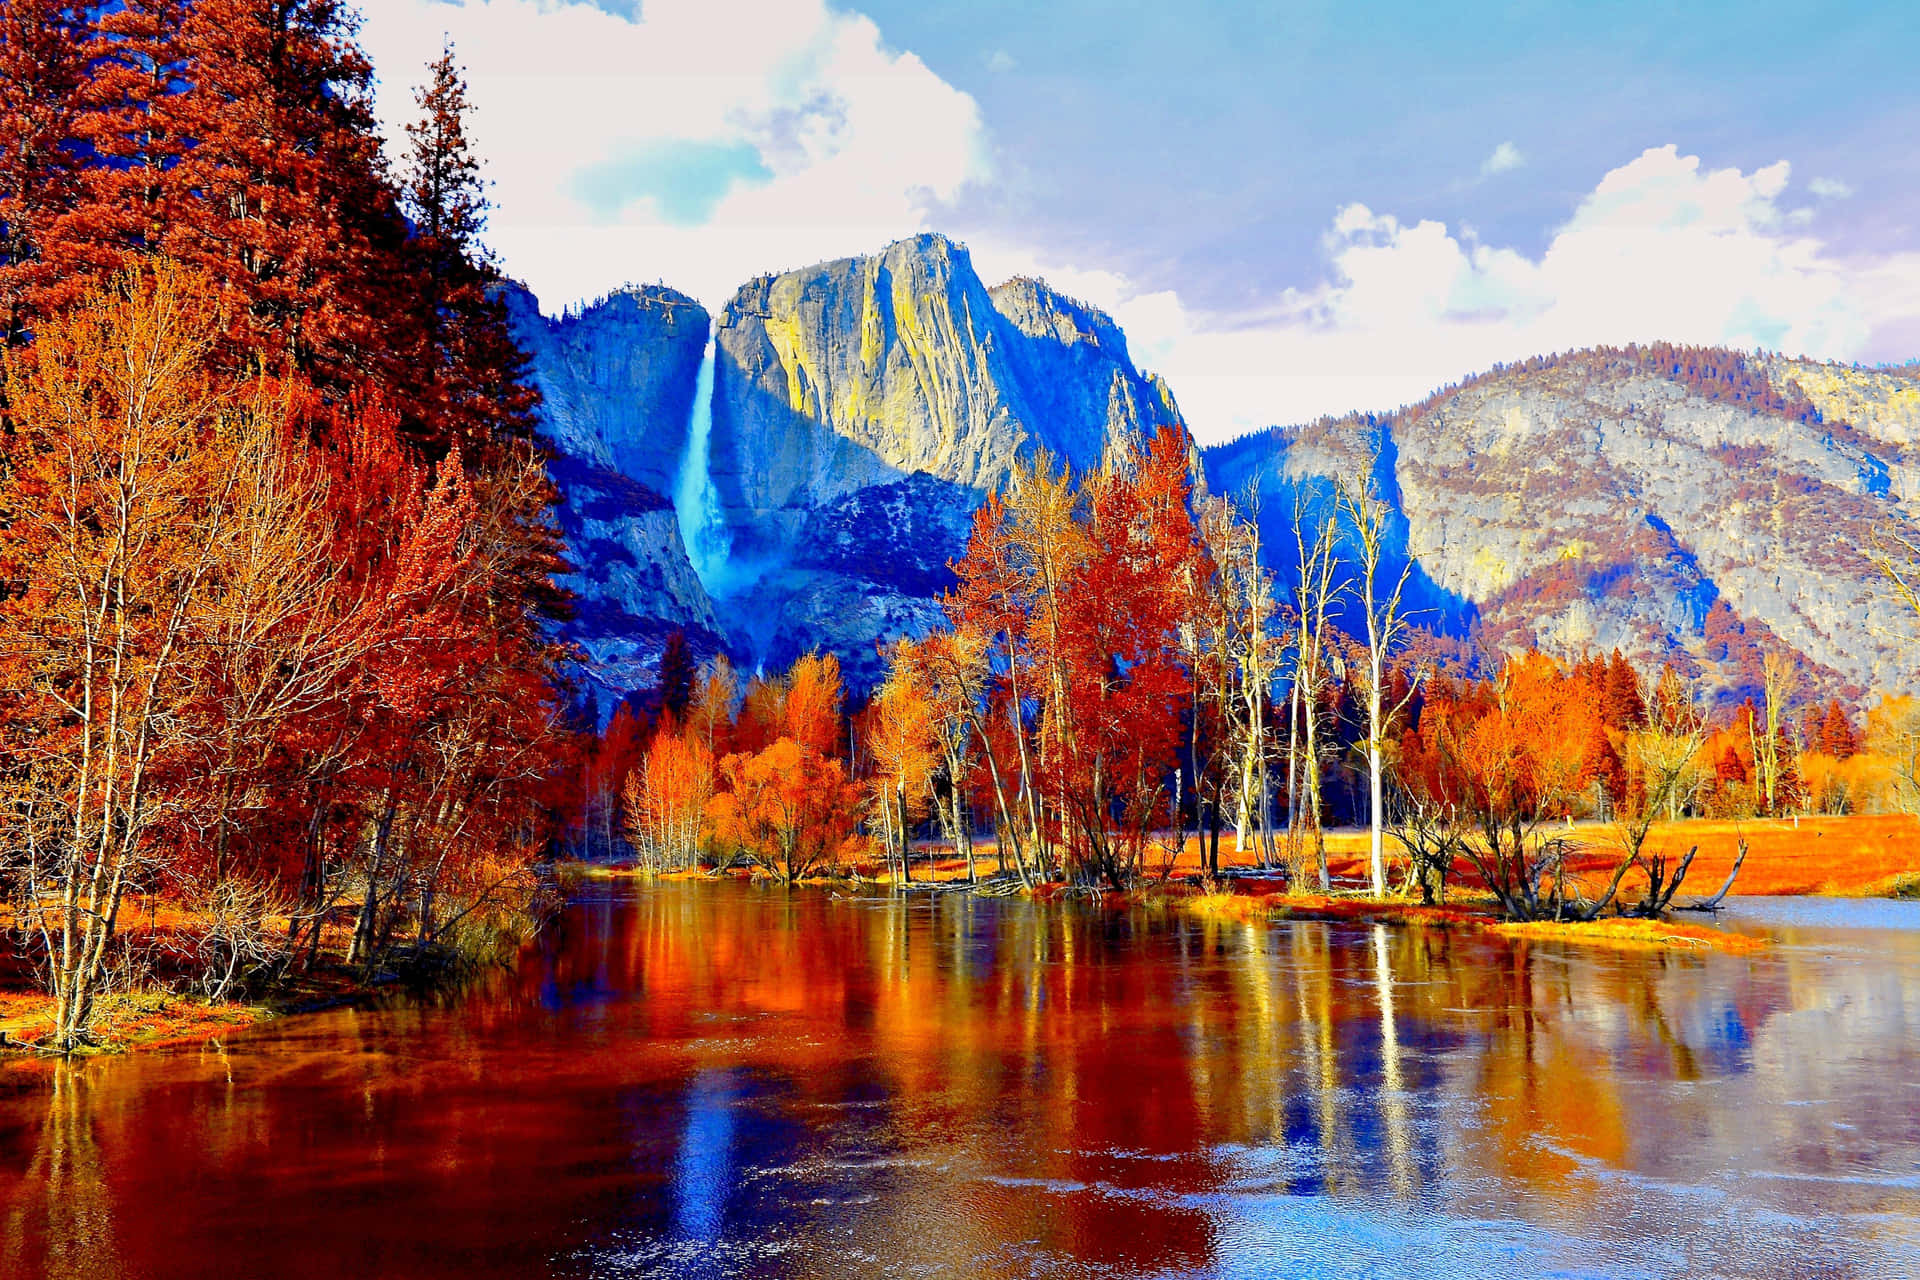 Nyd den betagende skønhed af en bjerg under efteråret. Wallpaper